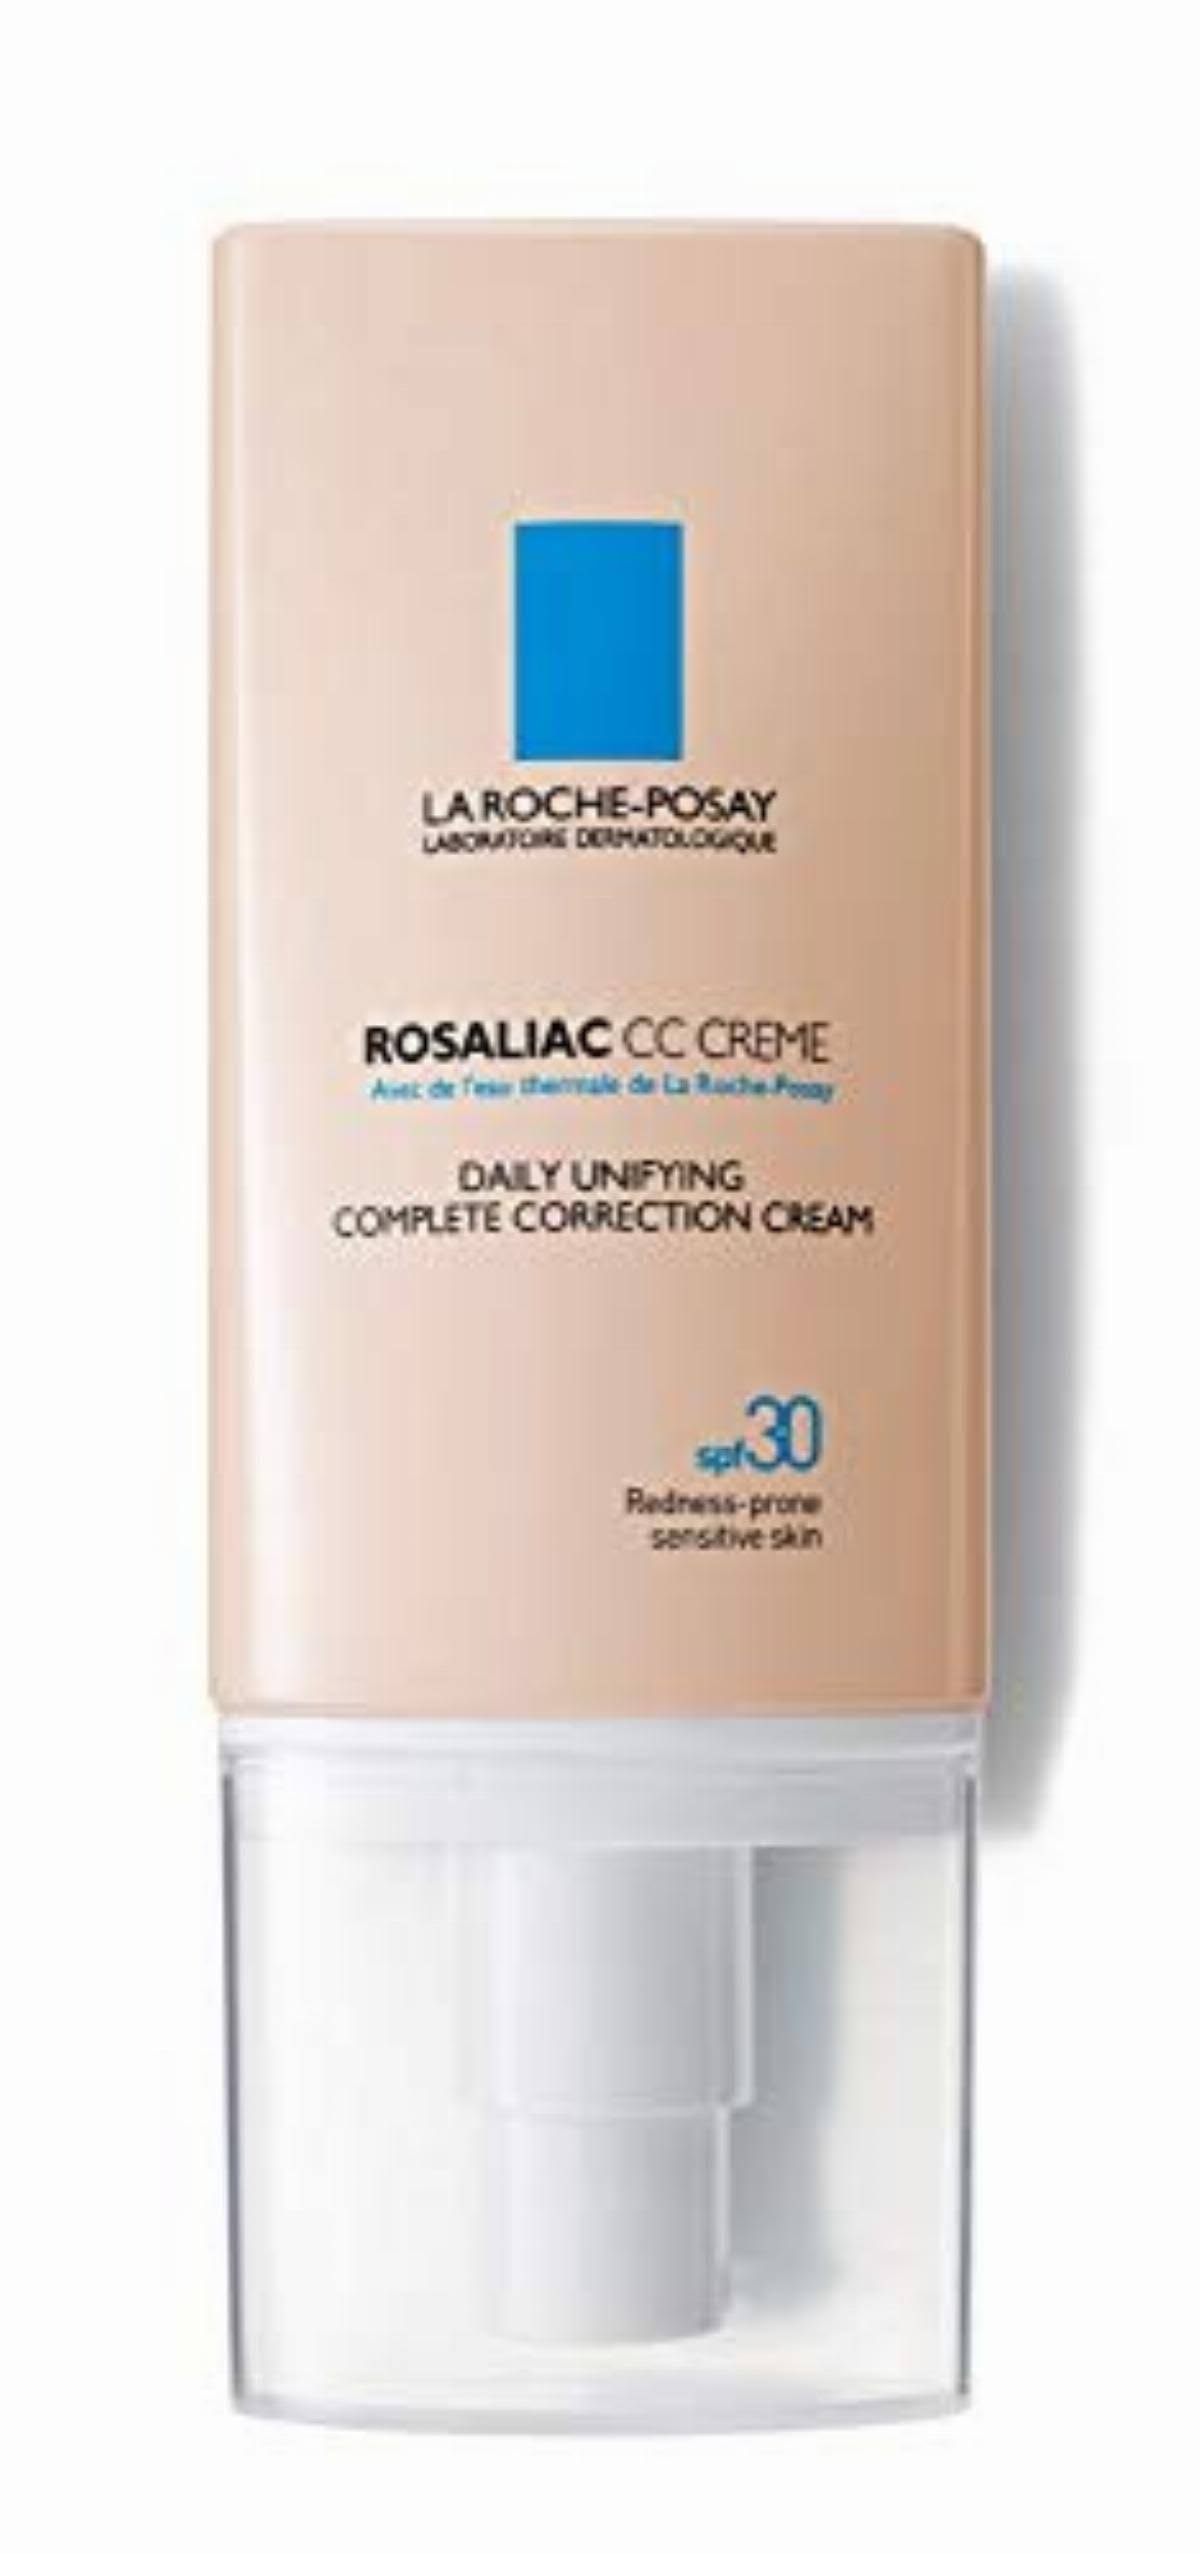 La Roche-Posay Rosaliac Complete Correction Cream - 50ml